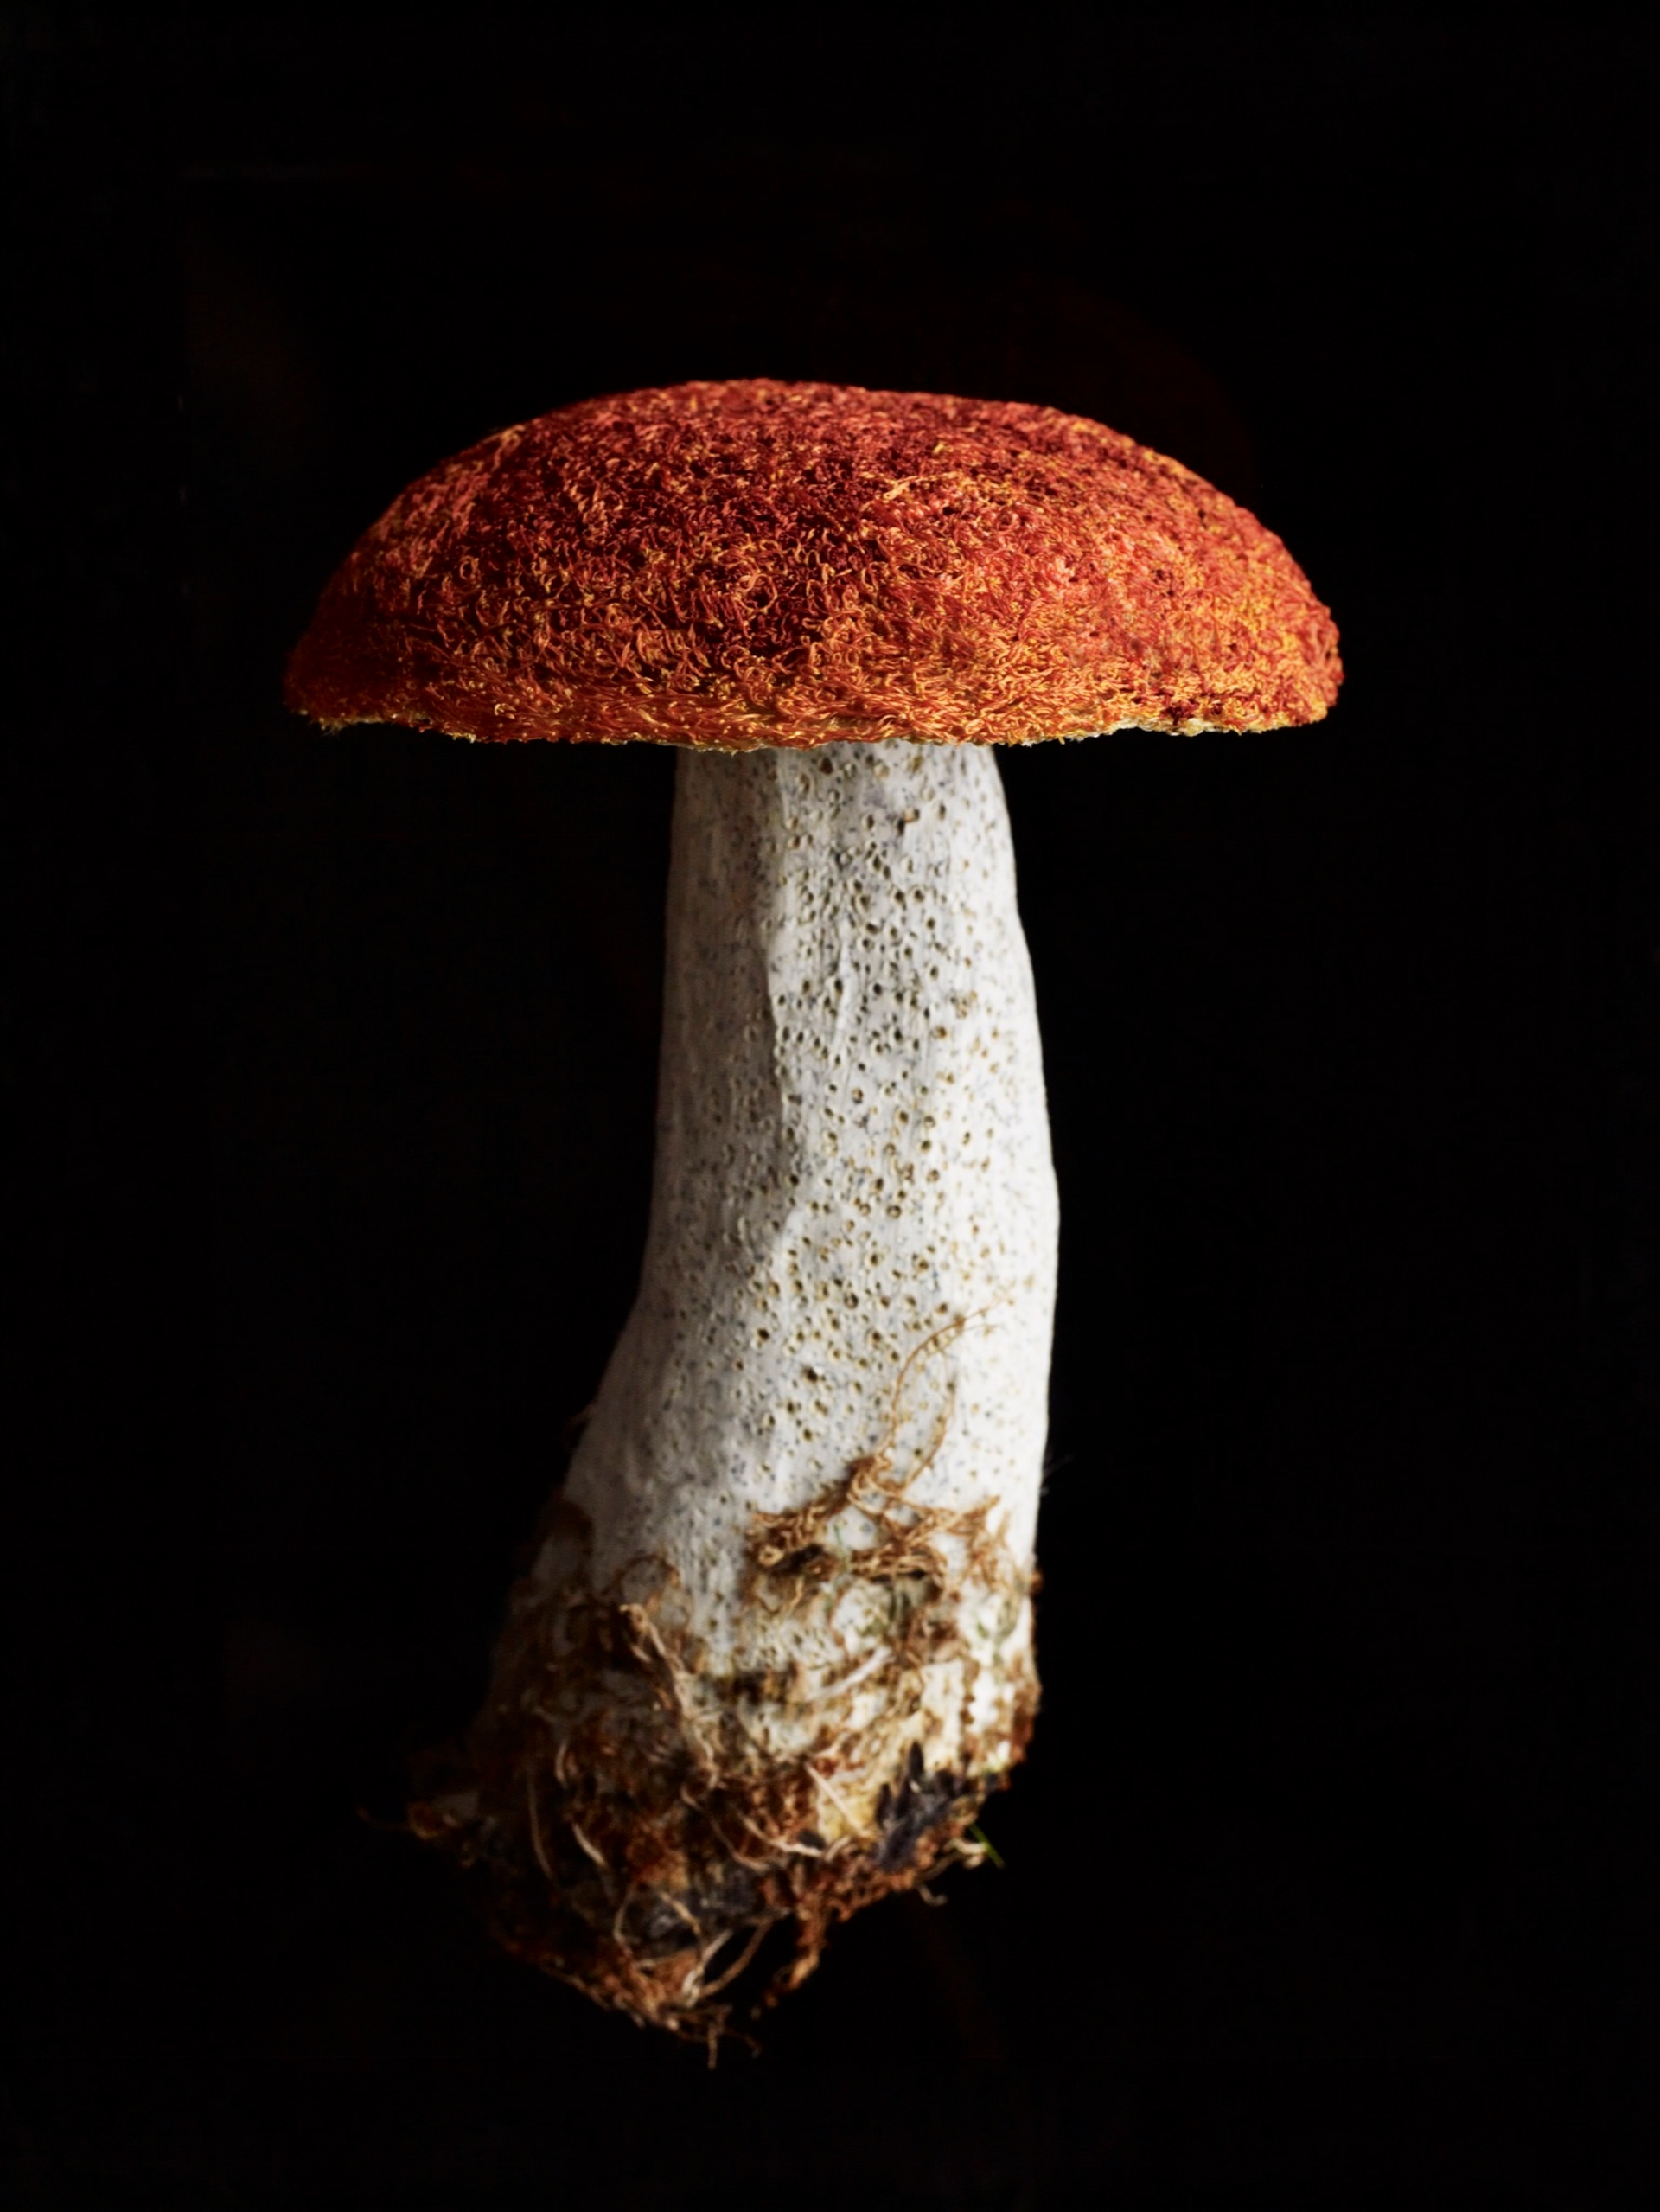 Amanda Cobbett, "Fungi"